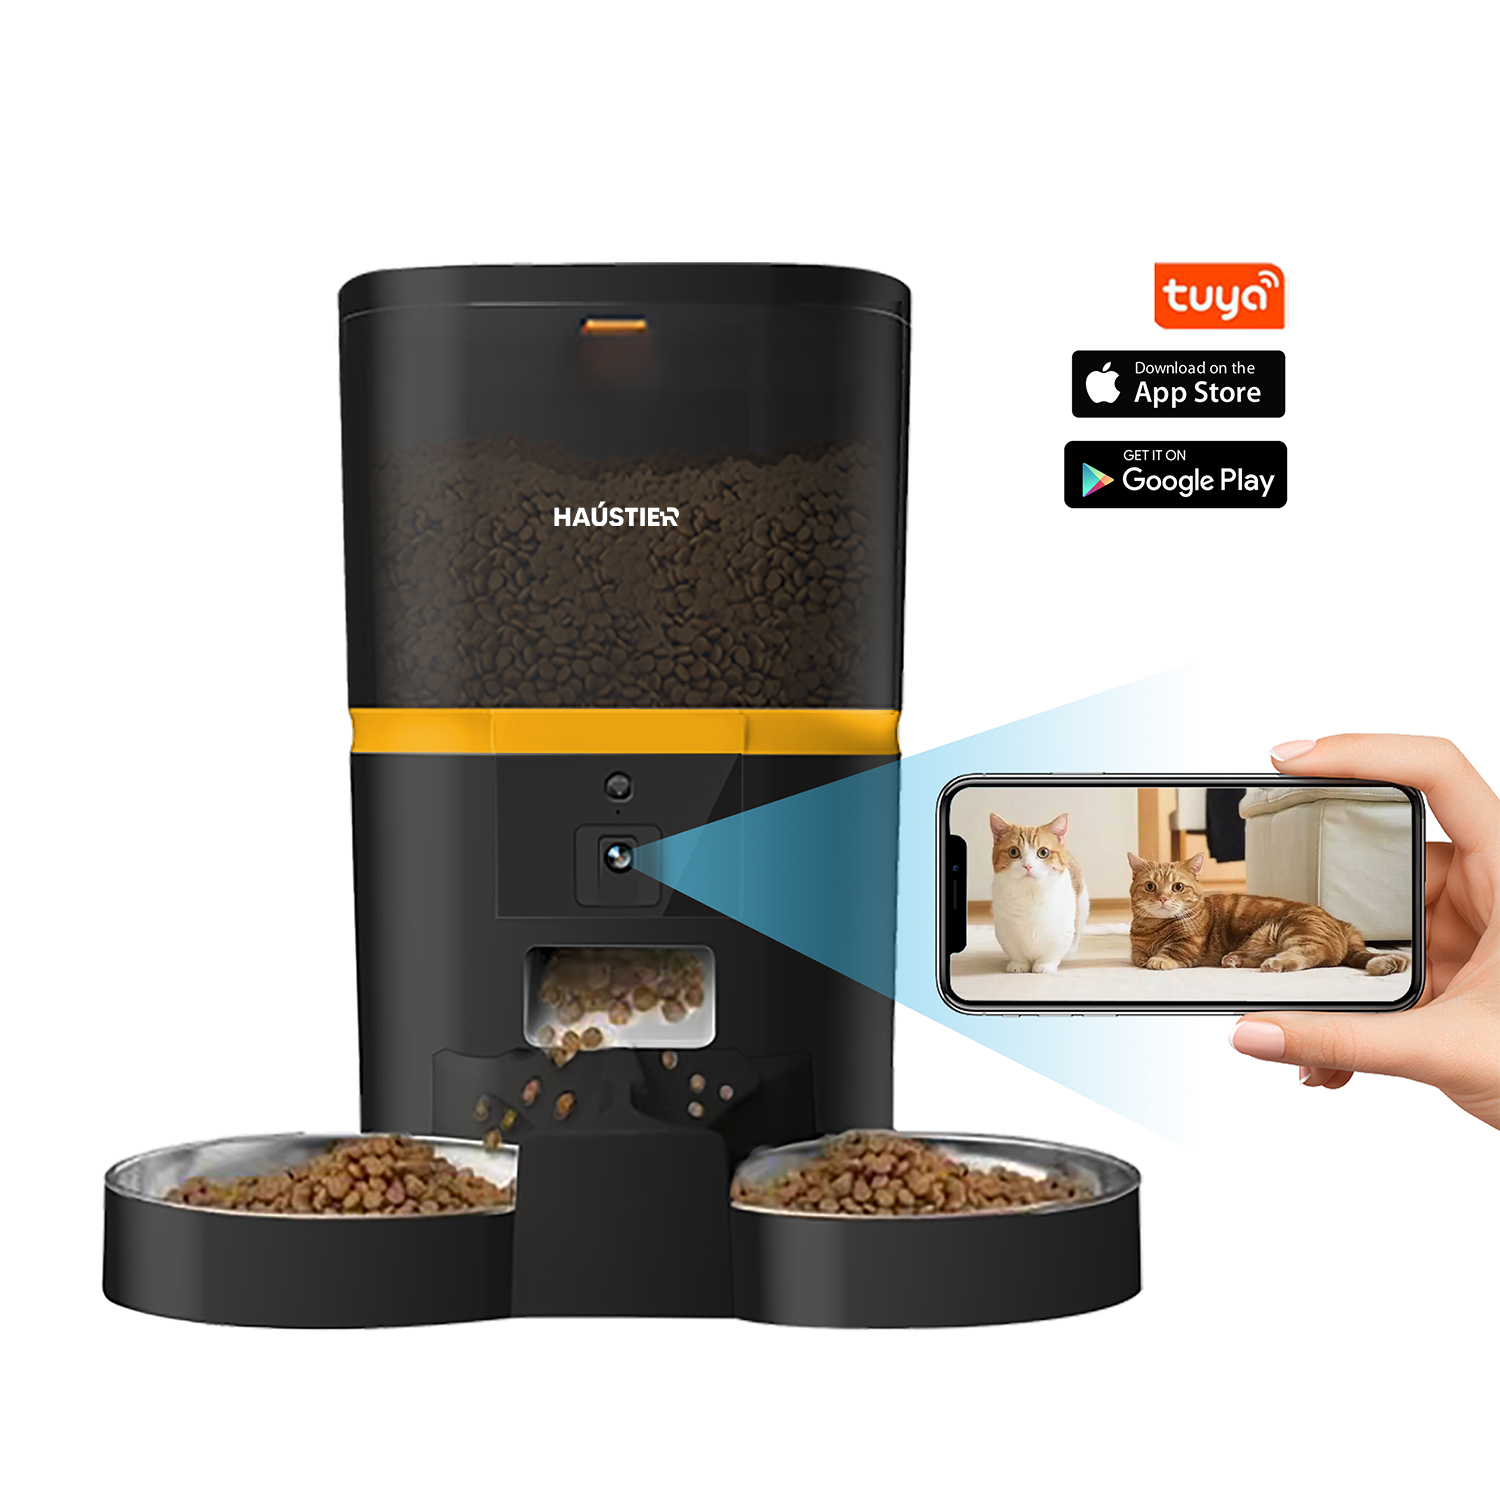 Haustier QQ005-Dual Akıllı Kedi Köpek Otomatik Mama Kabı , Tuya App-Wifi Uzaktan Kontrol, Sesle Çağırma, 480P Kamera, 6Lt hazne, Metal Kase (Siyah)